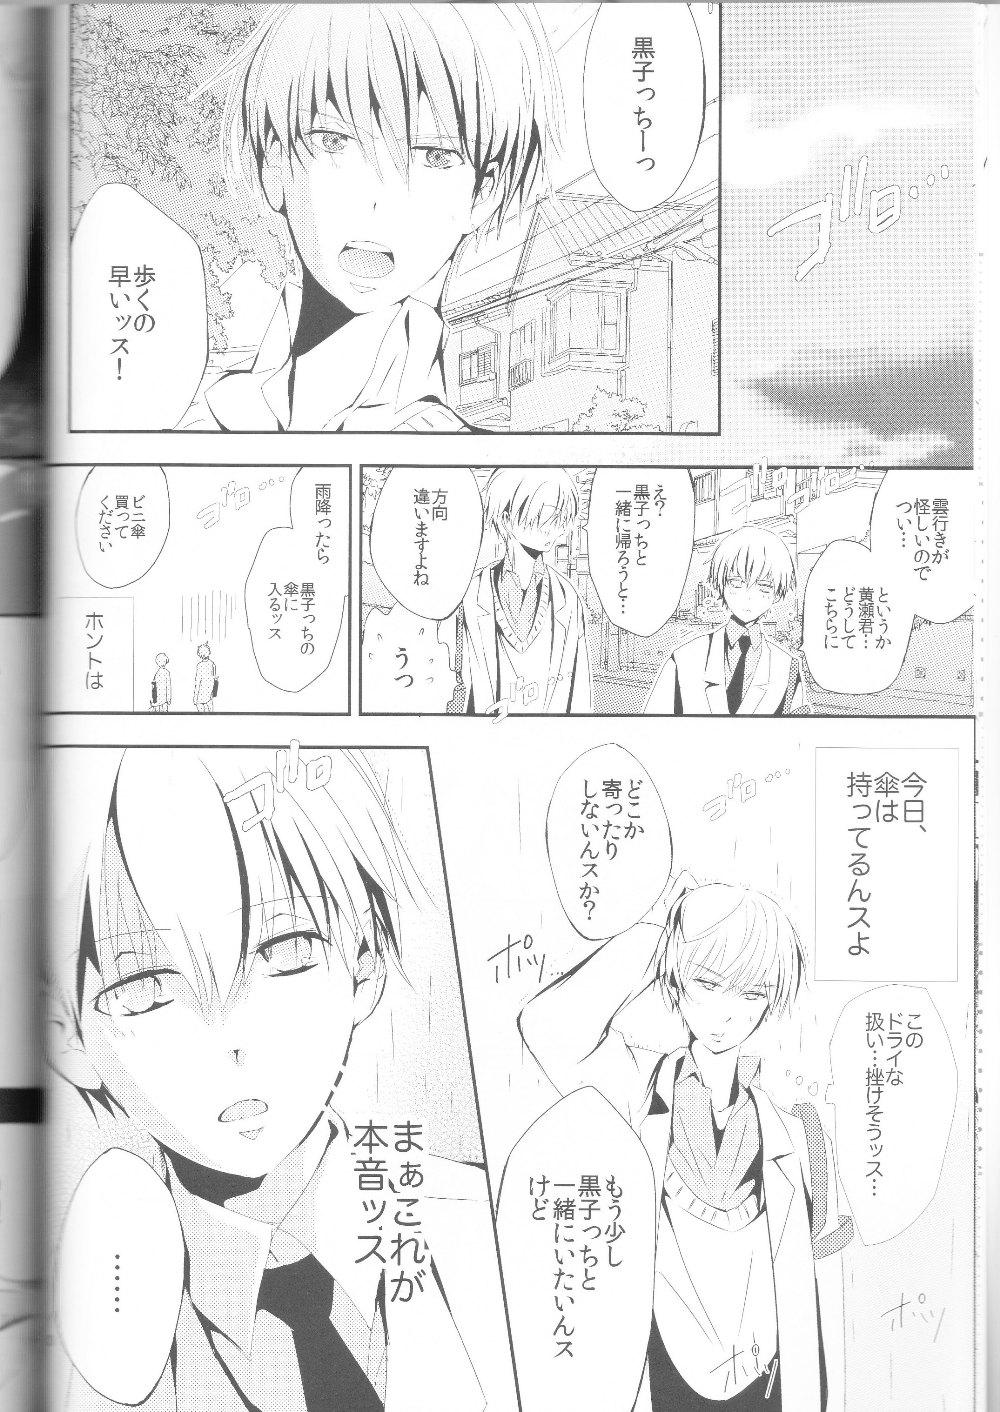 Masterbate Kisekise × Kuroko 3P - Kuroko no basuke Big Dicks - Page 11